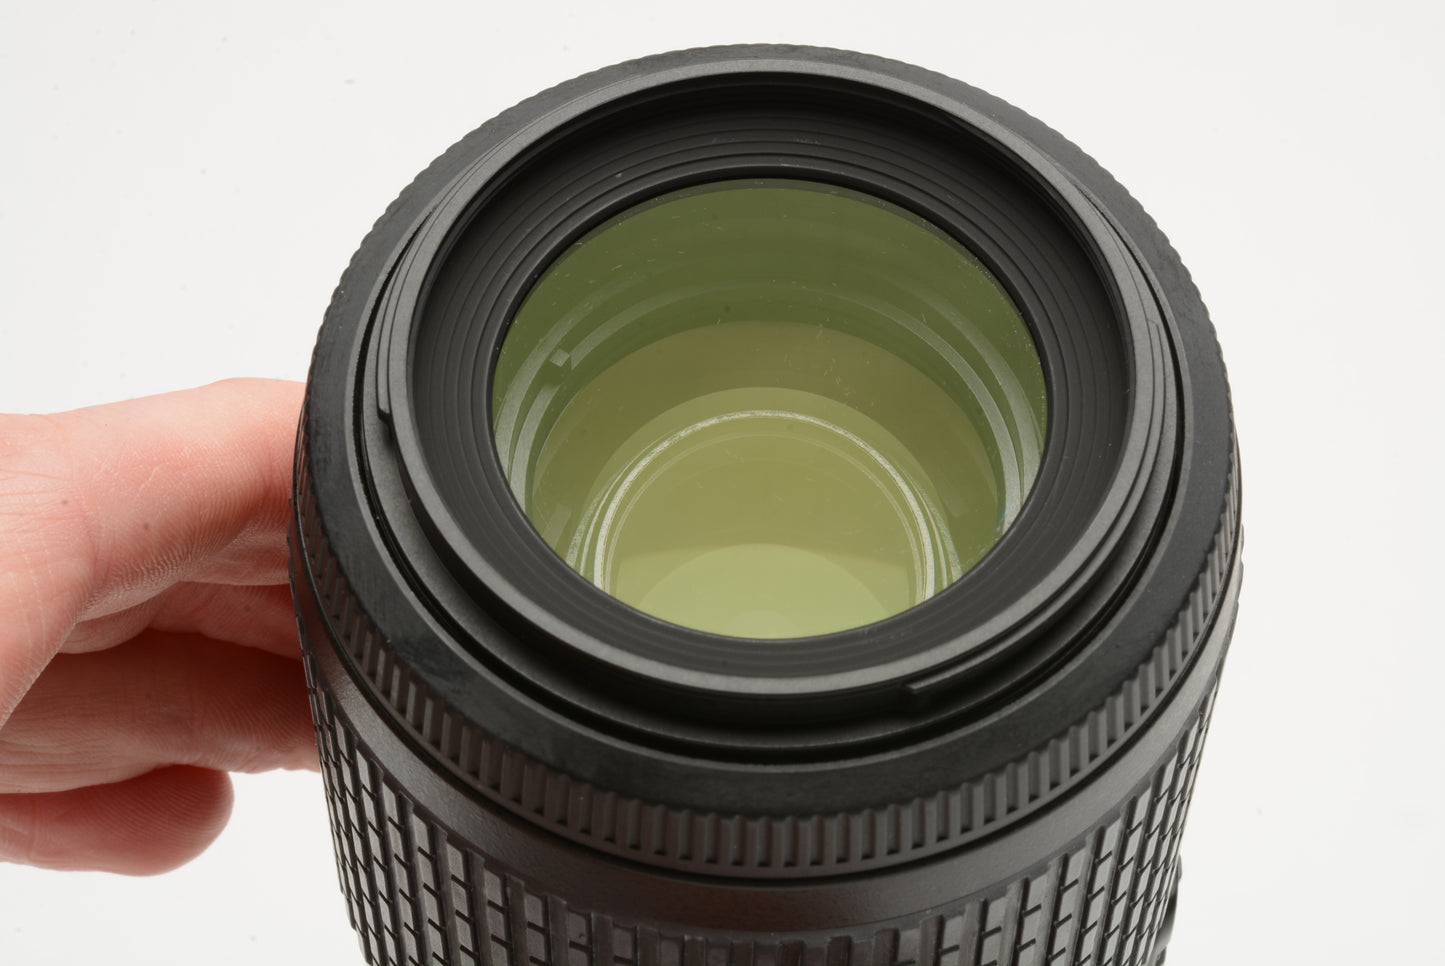 Nikon AF-S Nikkor 55-200mm f4-5.6G ED VR zoom lens, caps + Clear filter